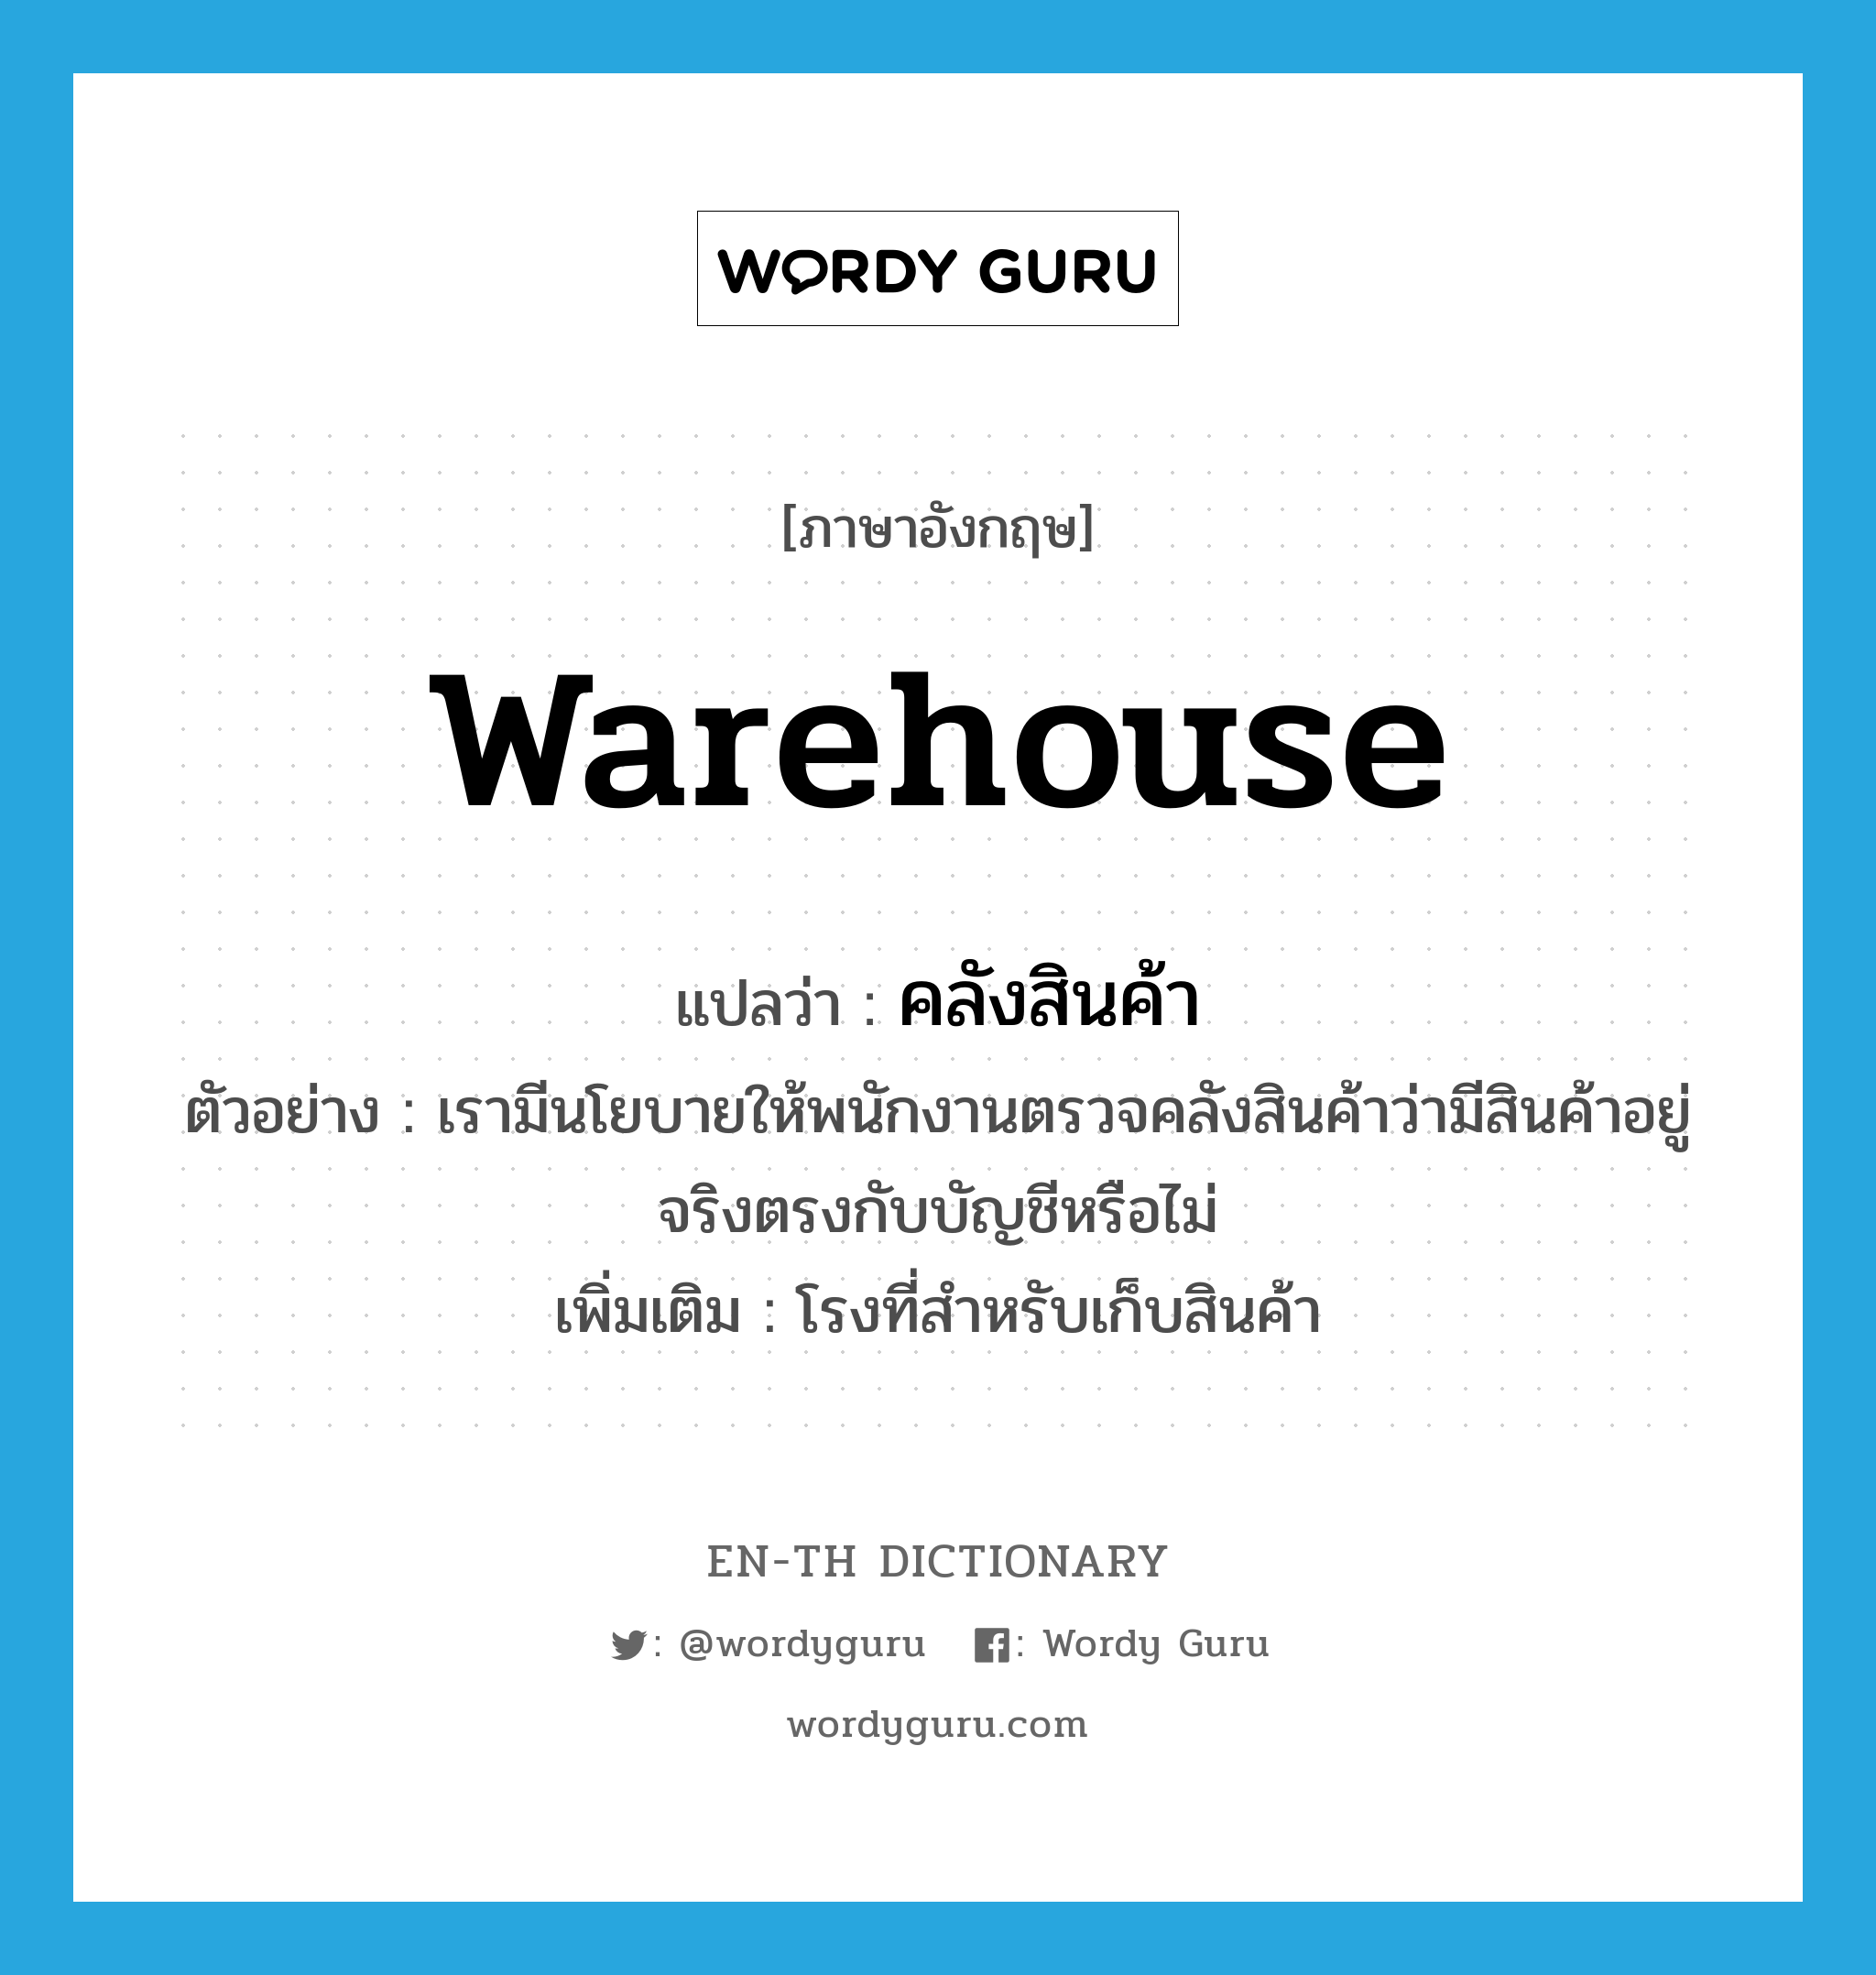 warehouse แปลว่า?, คำศัพท์ภาษาอังกฤษ warehouse แปลว่า คลังสินค้า ประเภท N ตัวอย่าง เรามีนโยบายให้พนักงานตรวจคลังสินค้าว่ามีสินค้าอยู่จริงตรงกับบัญชีหรือไม่ เพิ่มเติม โรงที่สำหรับเก็บสินค้า หมวด N